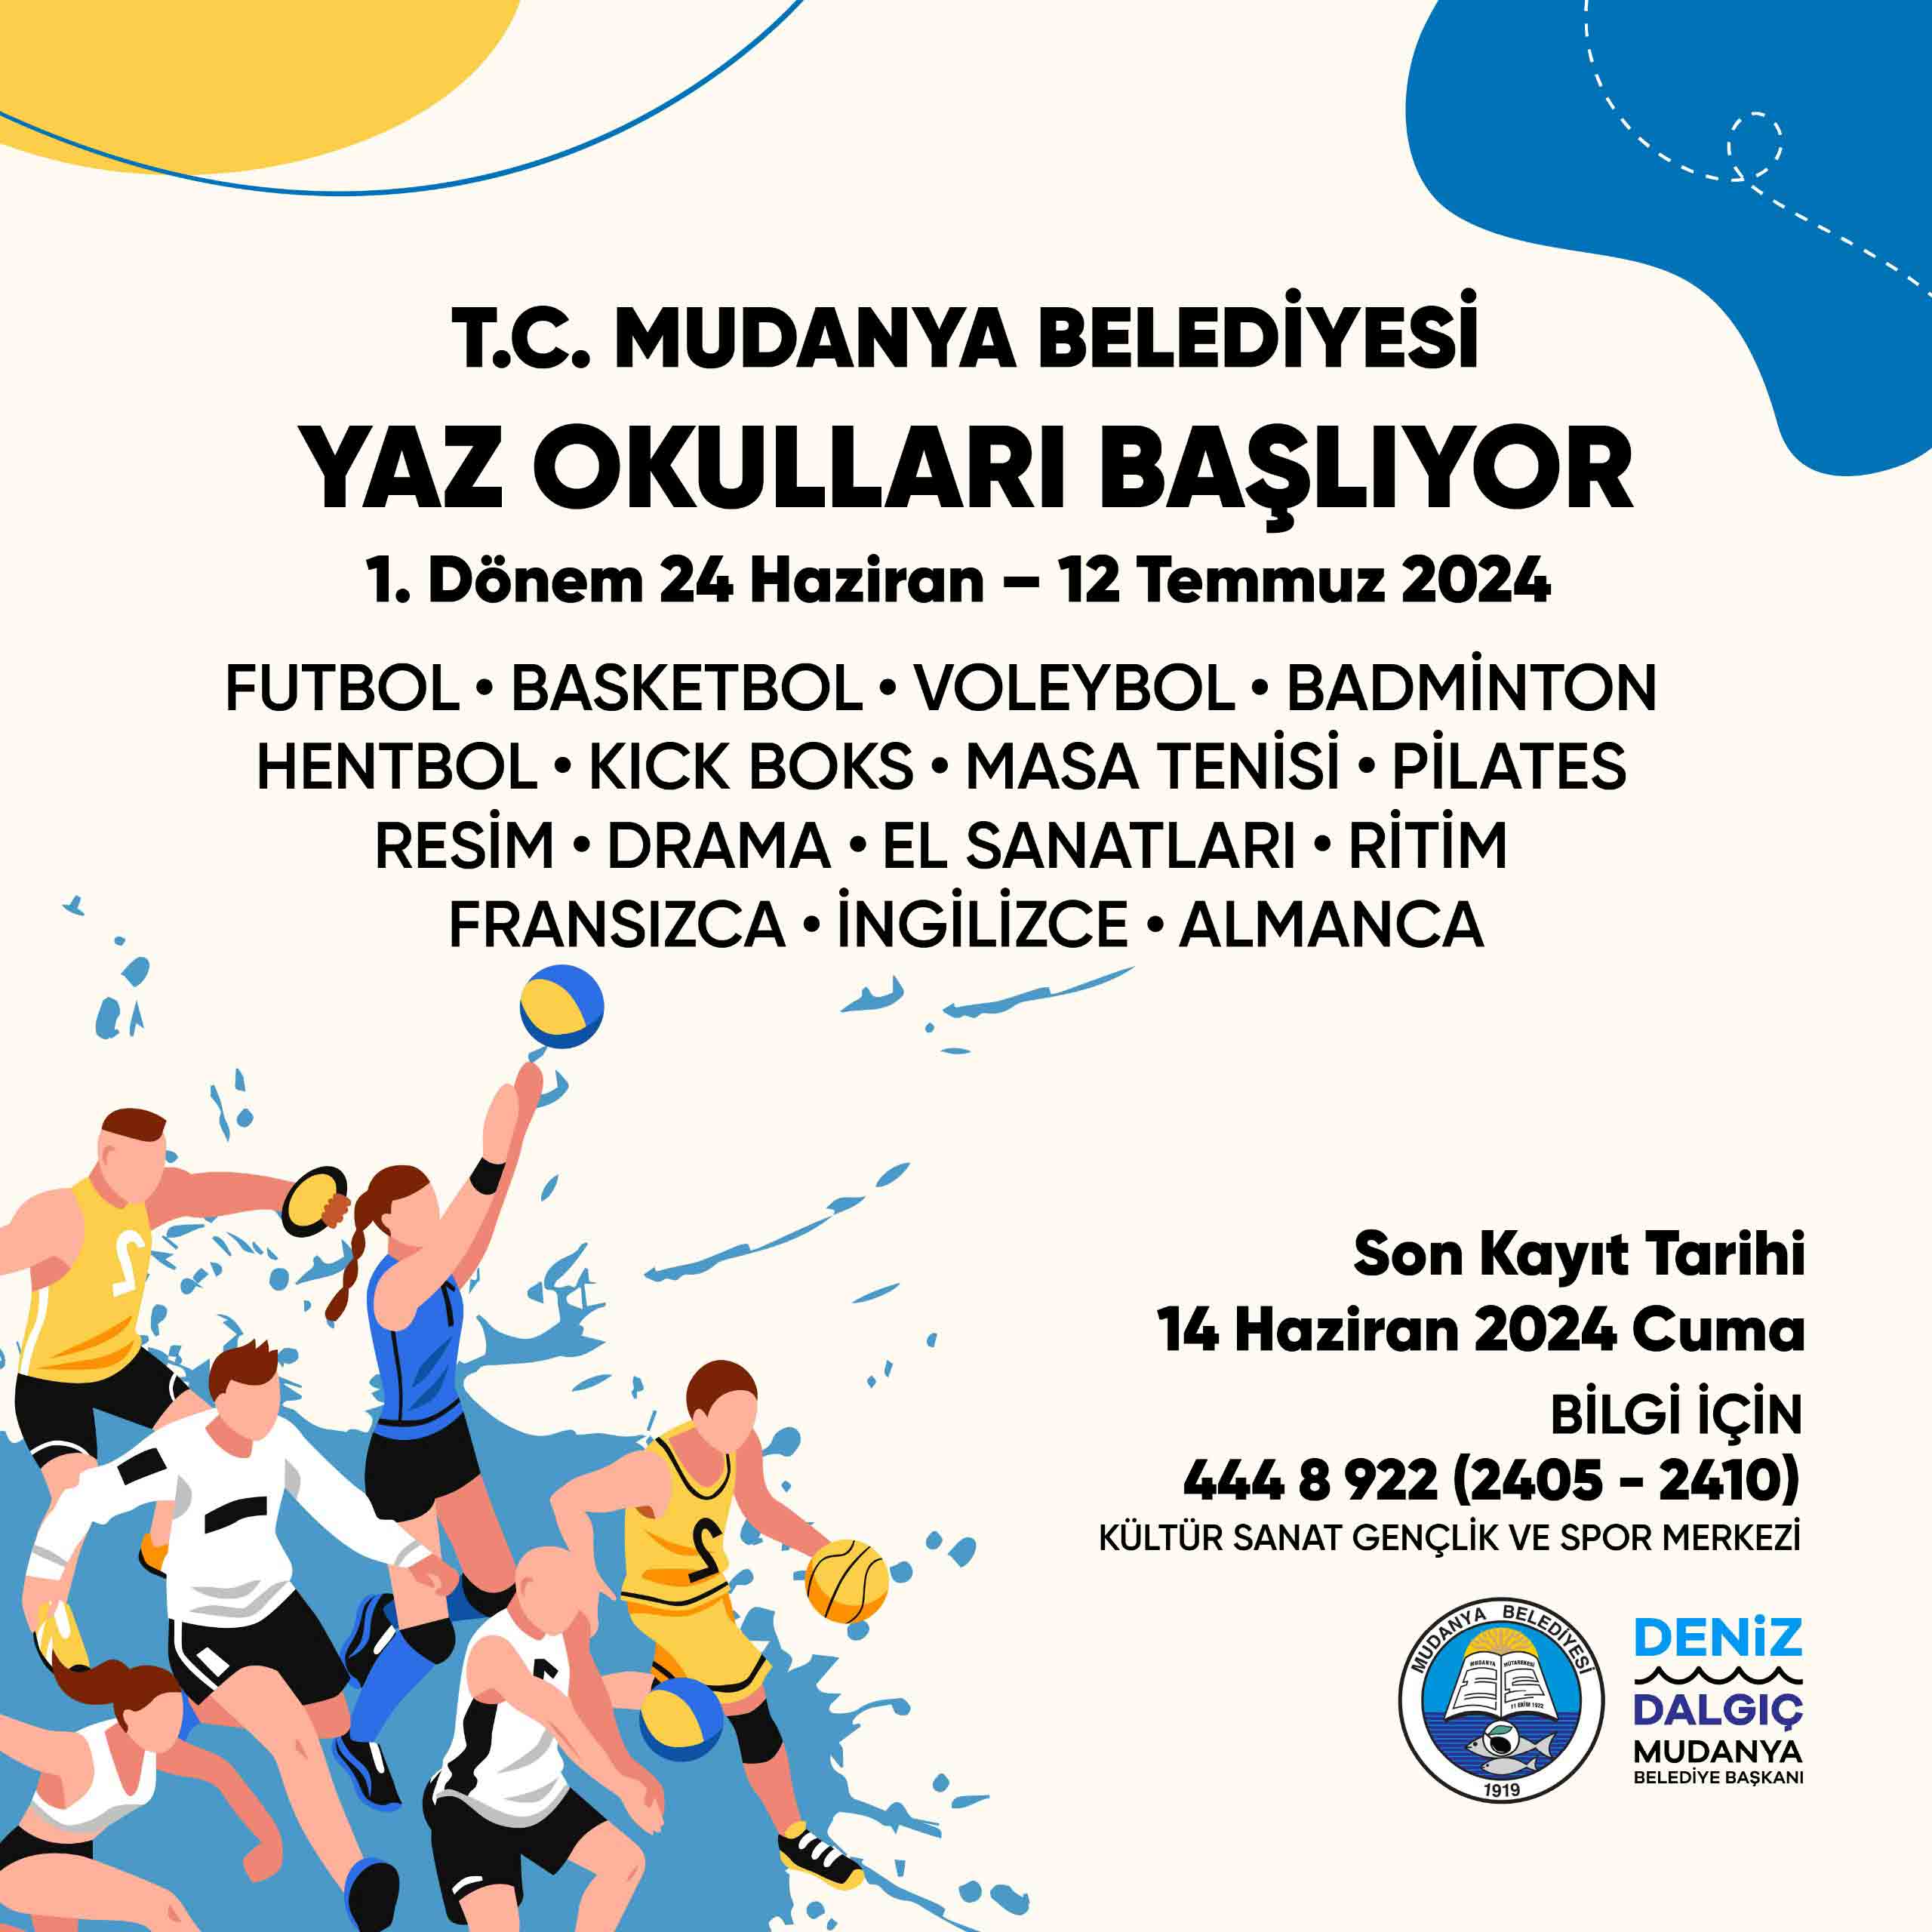 Mudanya Belediyesi Yaz Okulları Başlıyor1